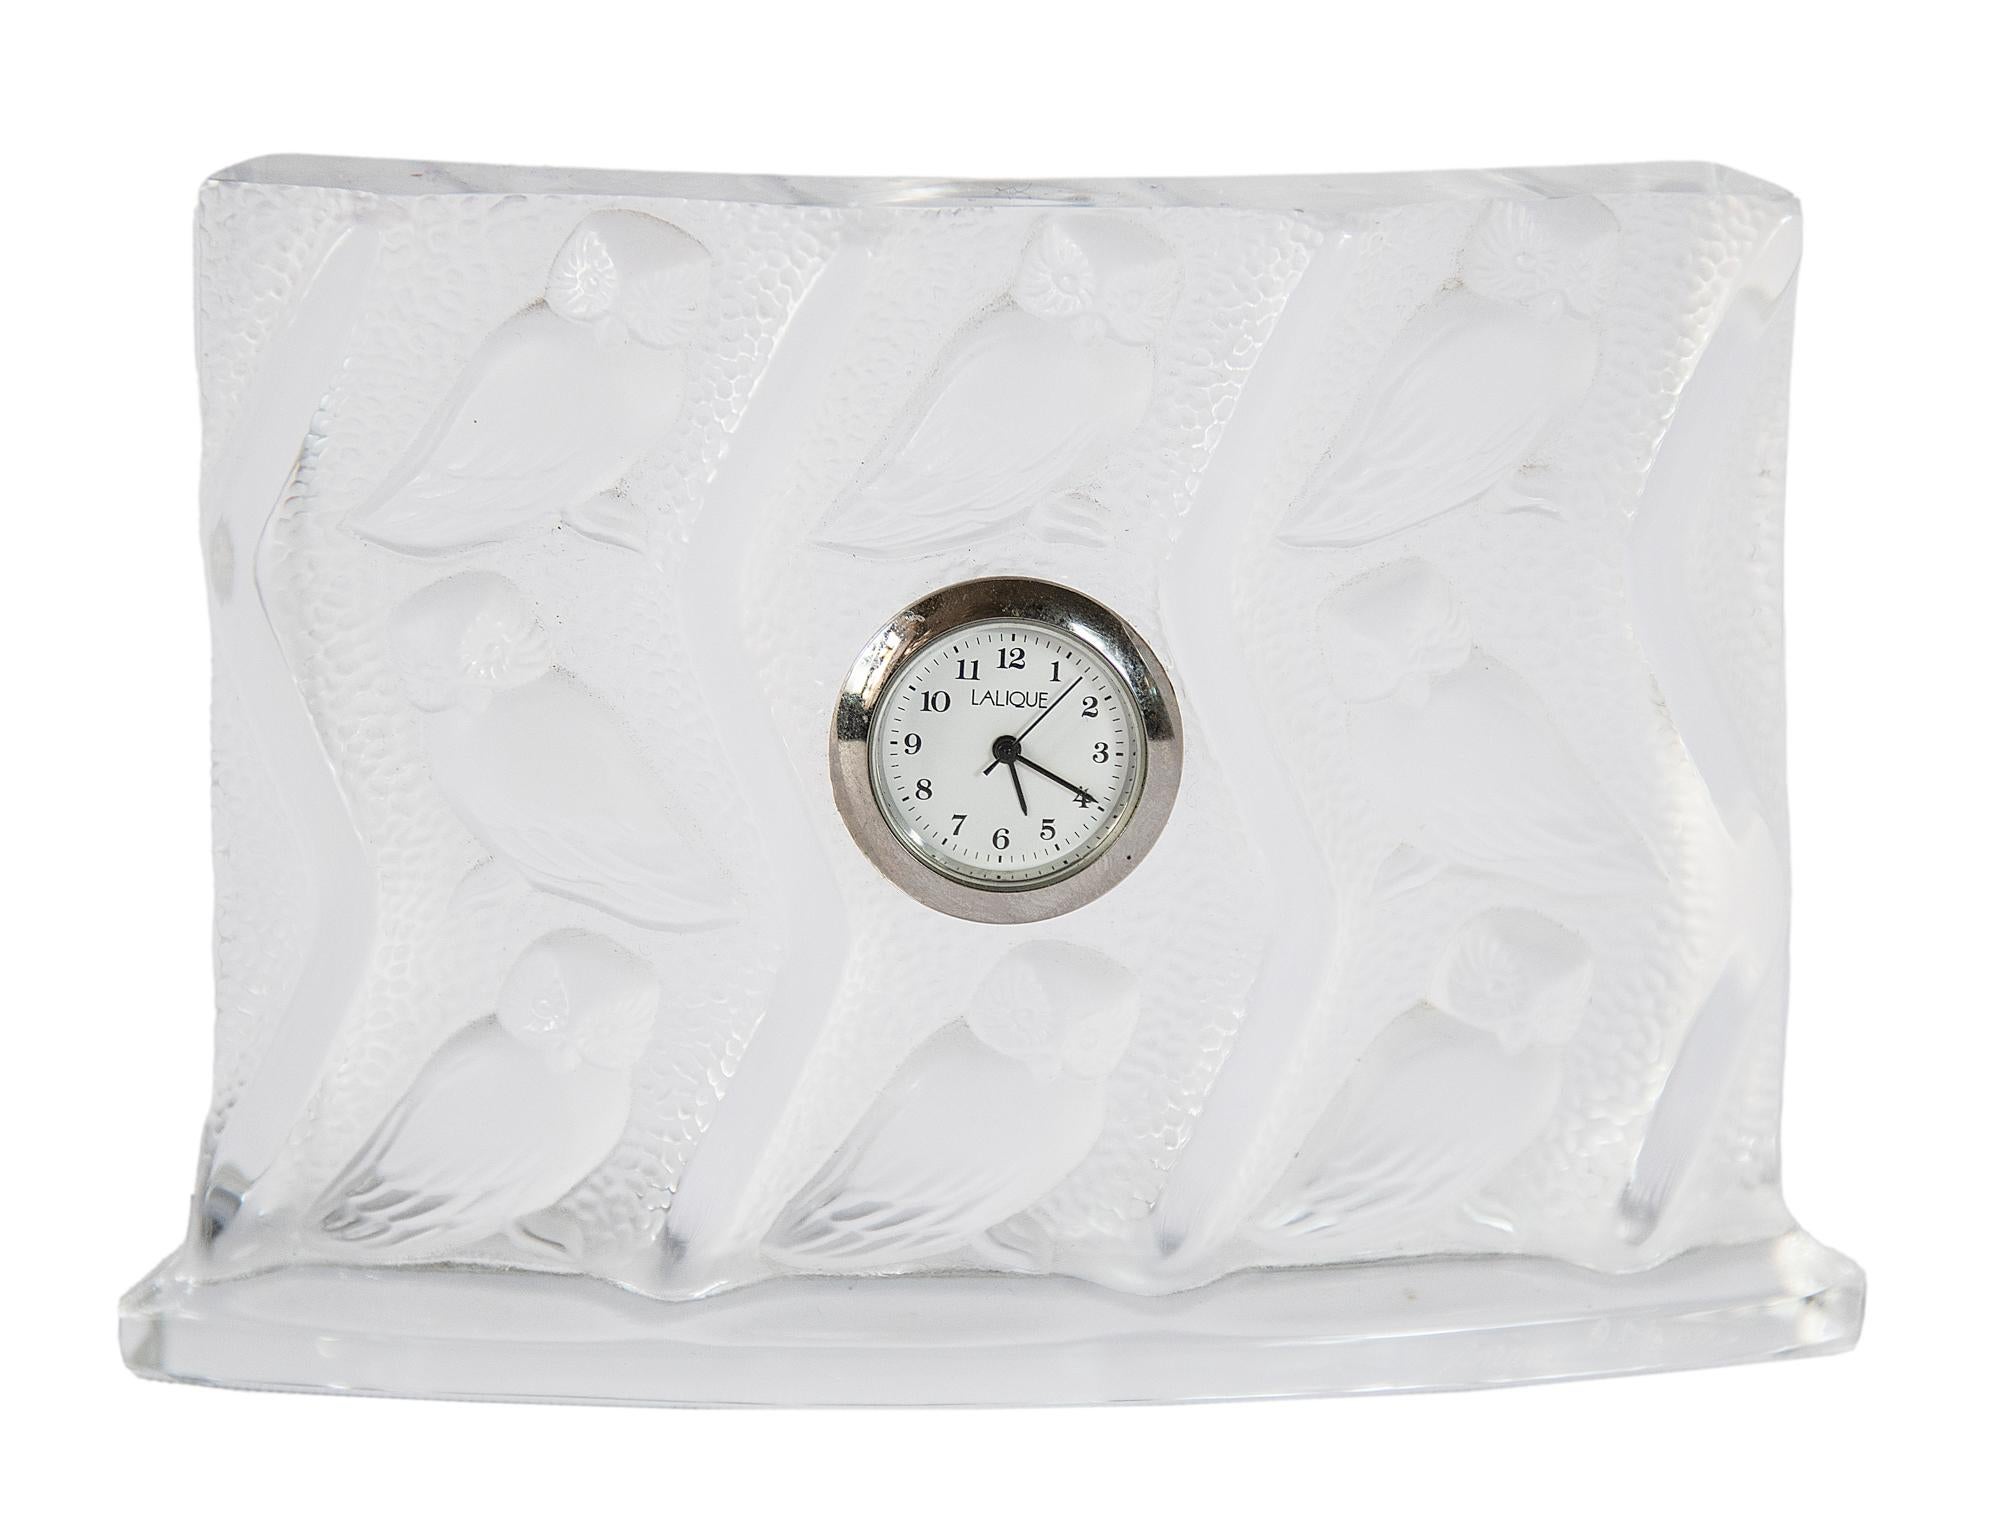 Französische Lalique Tischuhr mit Eule aus Kristall.
Die Uhr besteht aus einem Sockel in klarem Kristall mit Eulenreliefmotiven.
Graviert mit der Marke Lalique France.
Ausgezeichneter Vintage-Zustand
